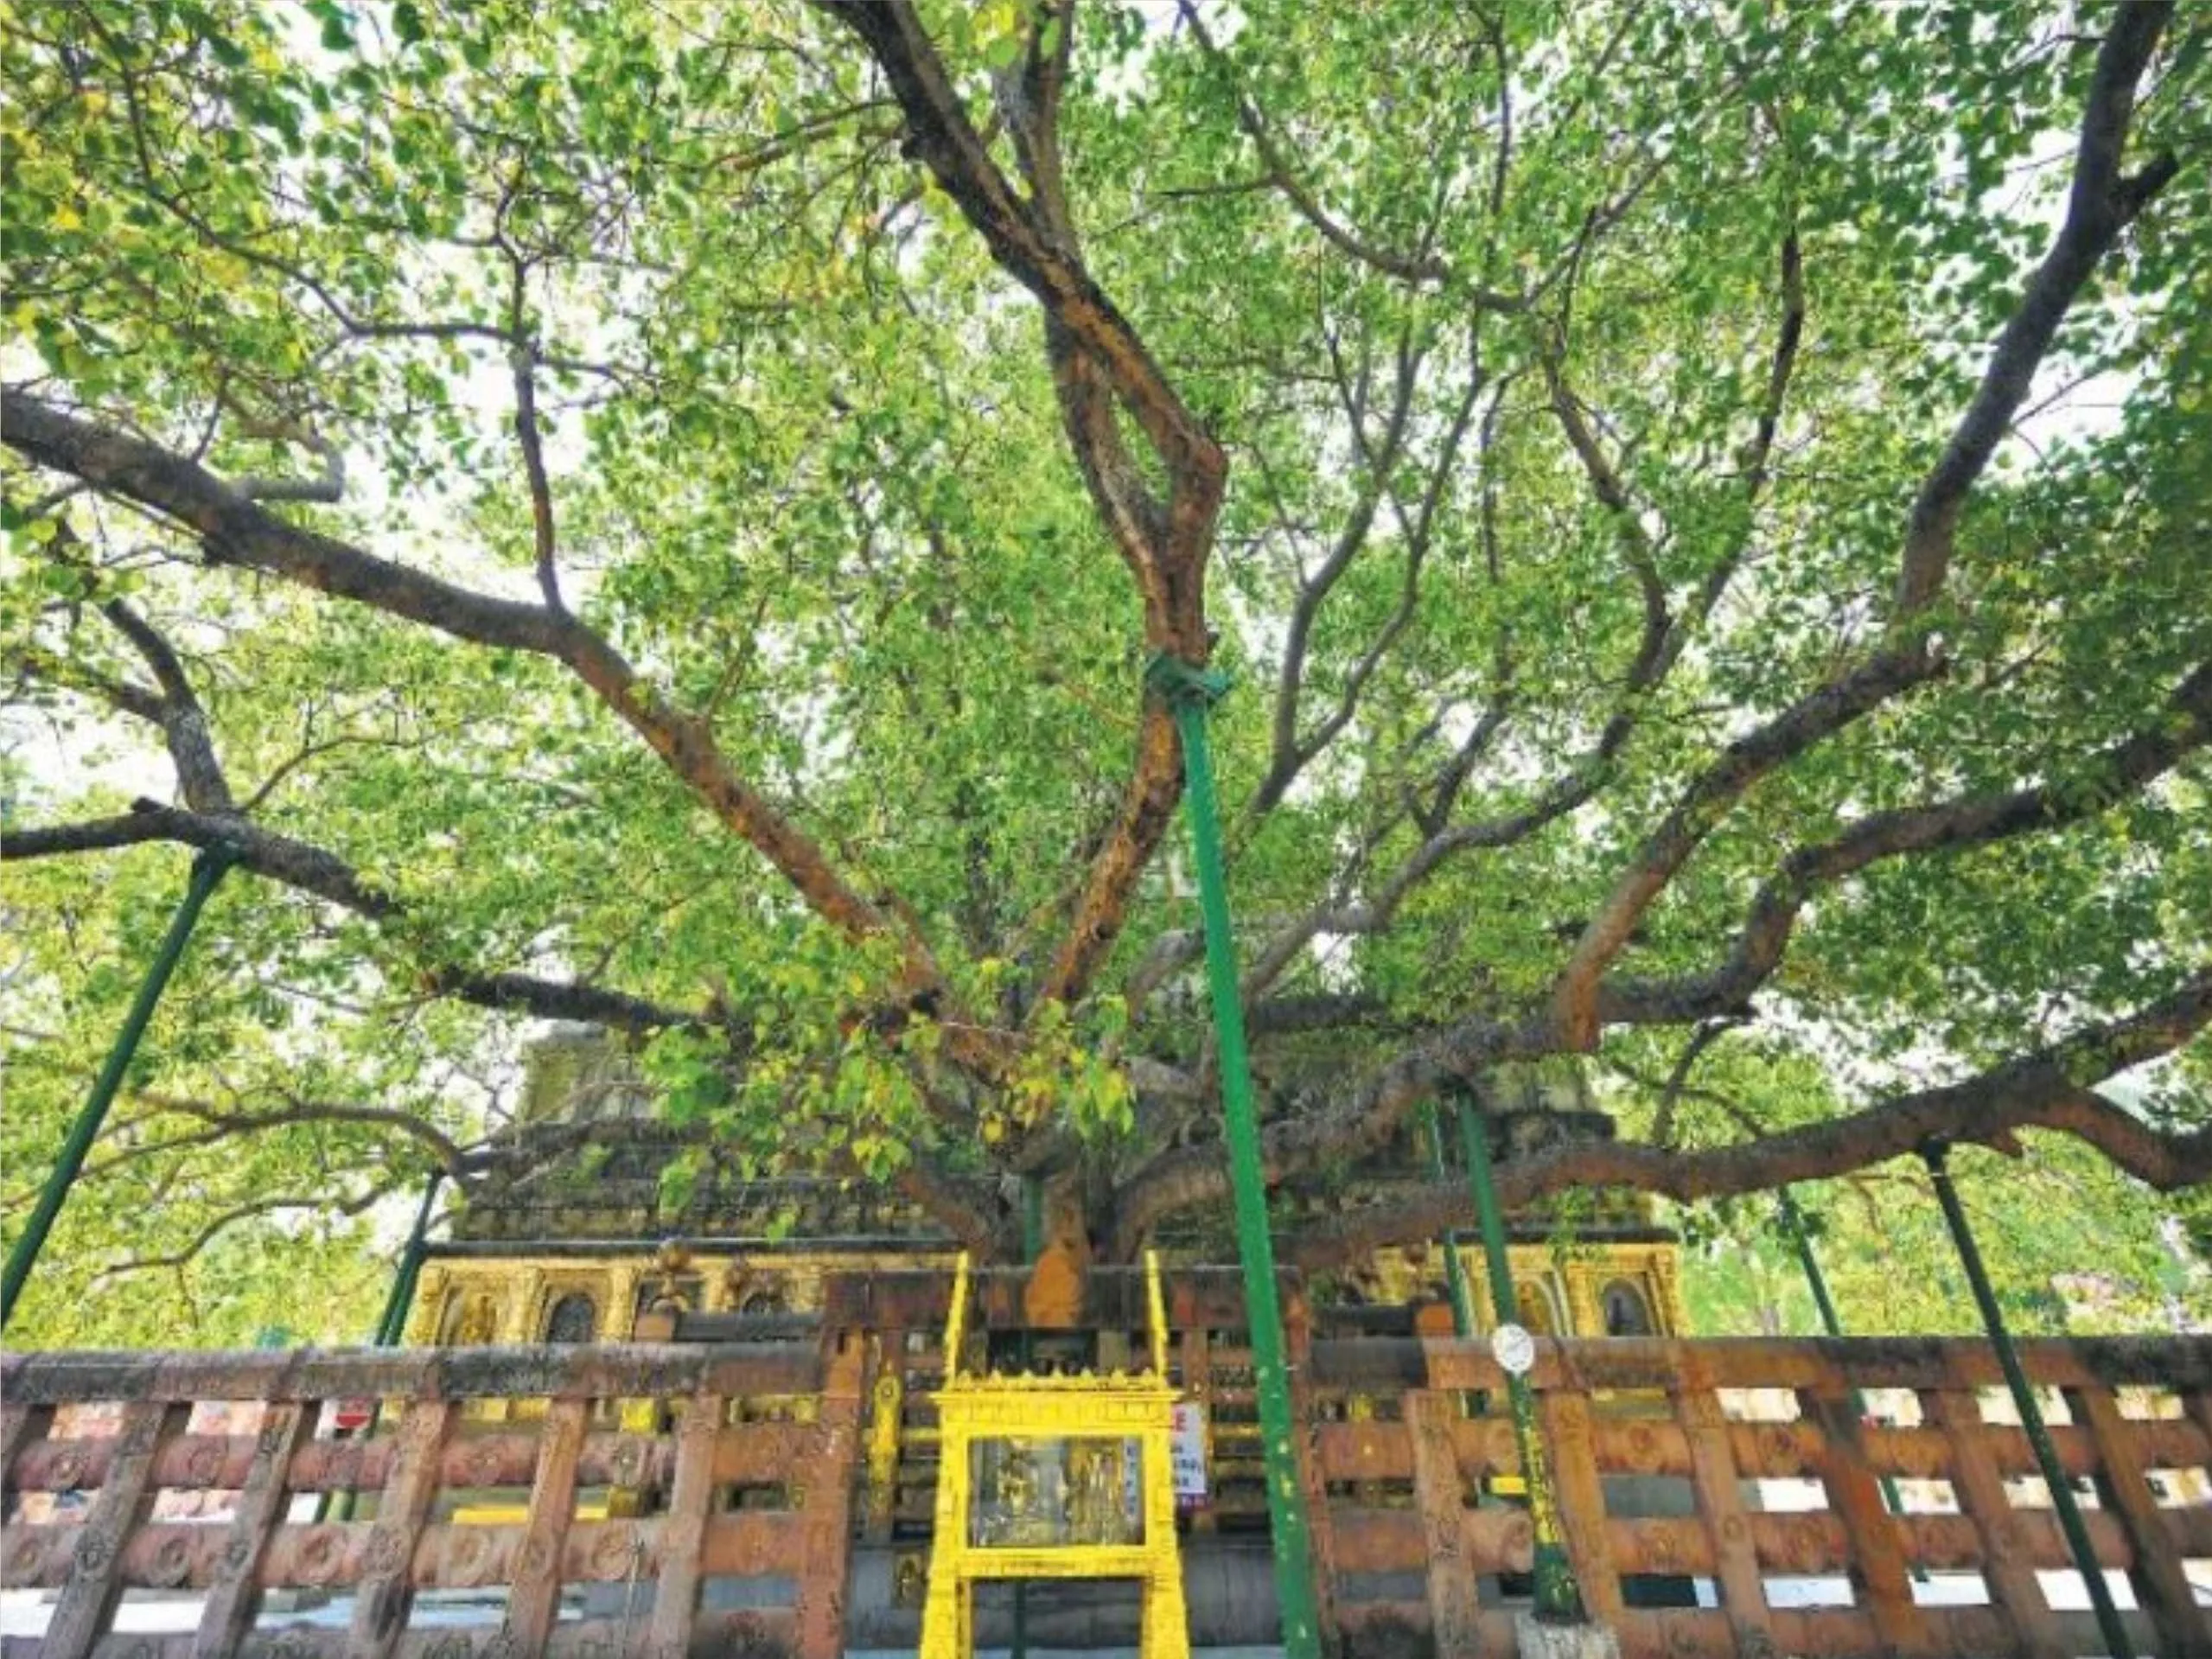 Bodhi tree